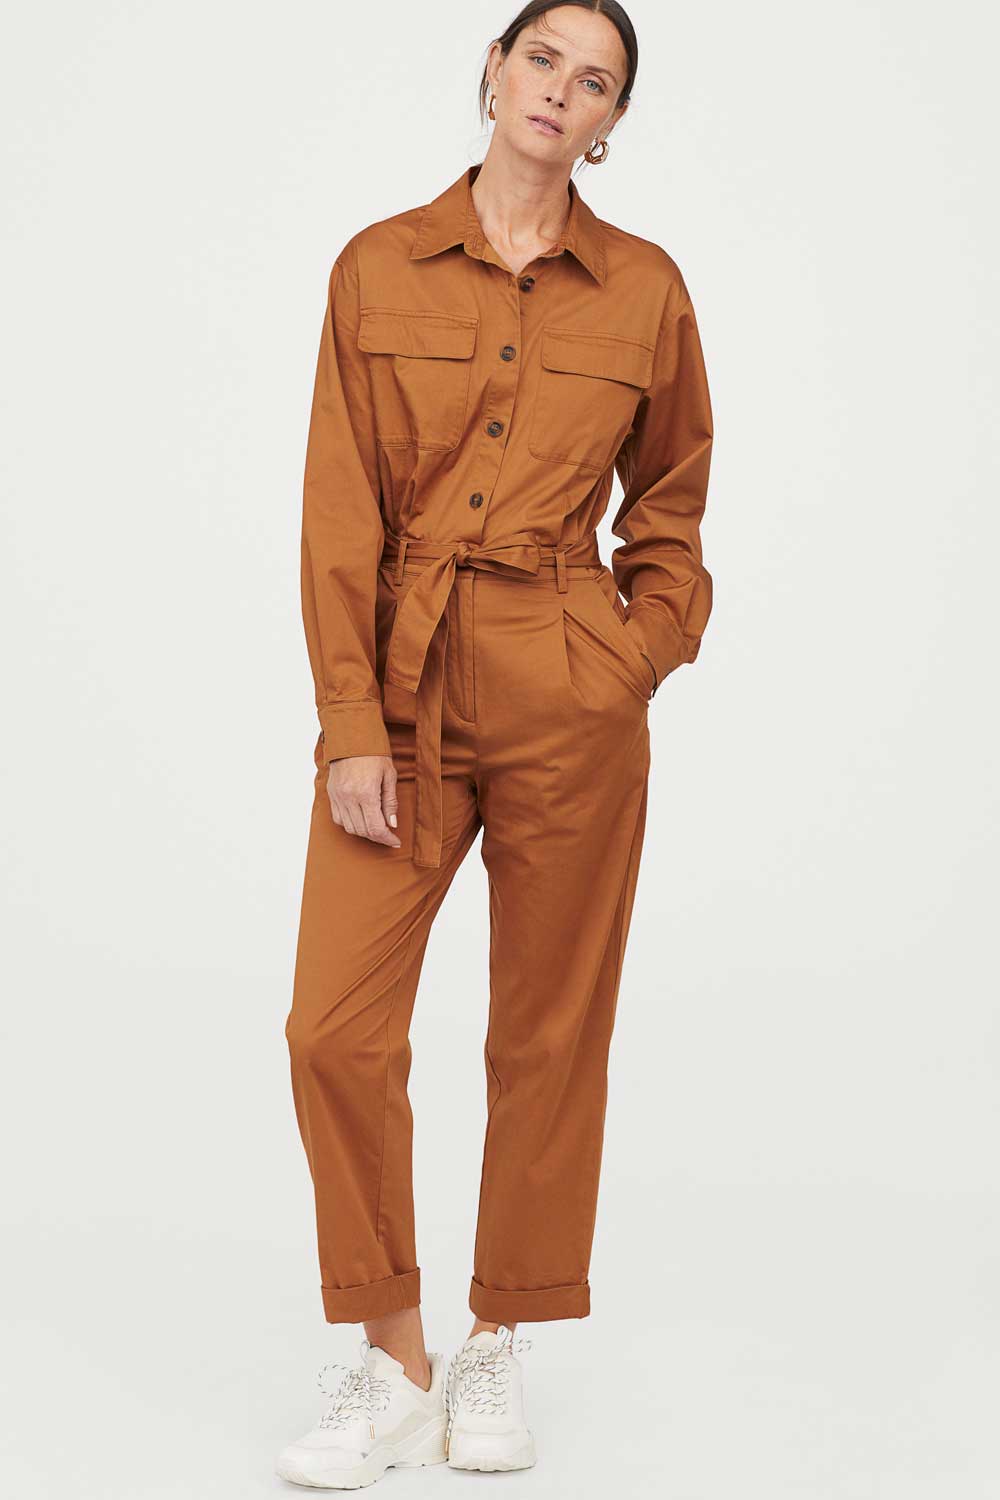 H&M abbigliamento autunno inverno 2019 2020